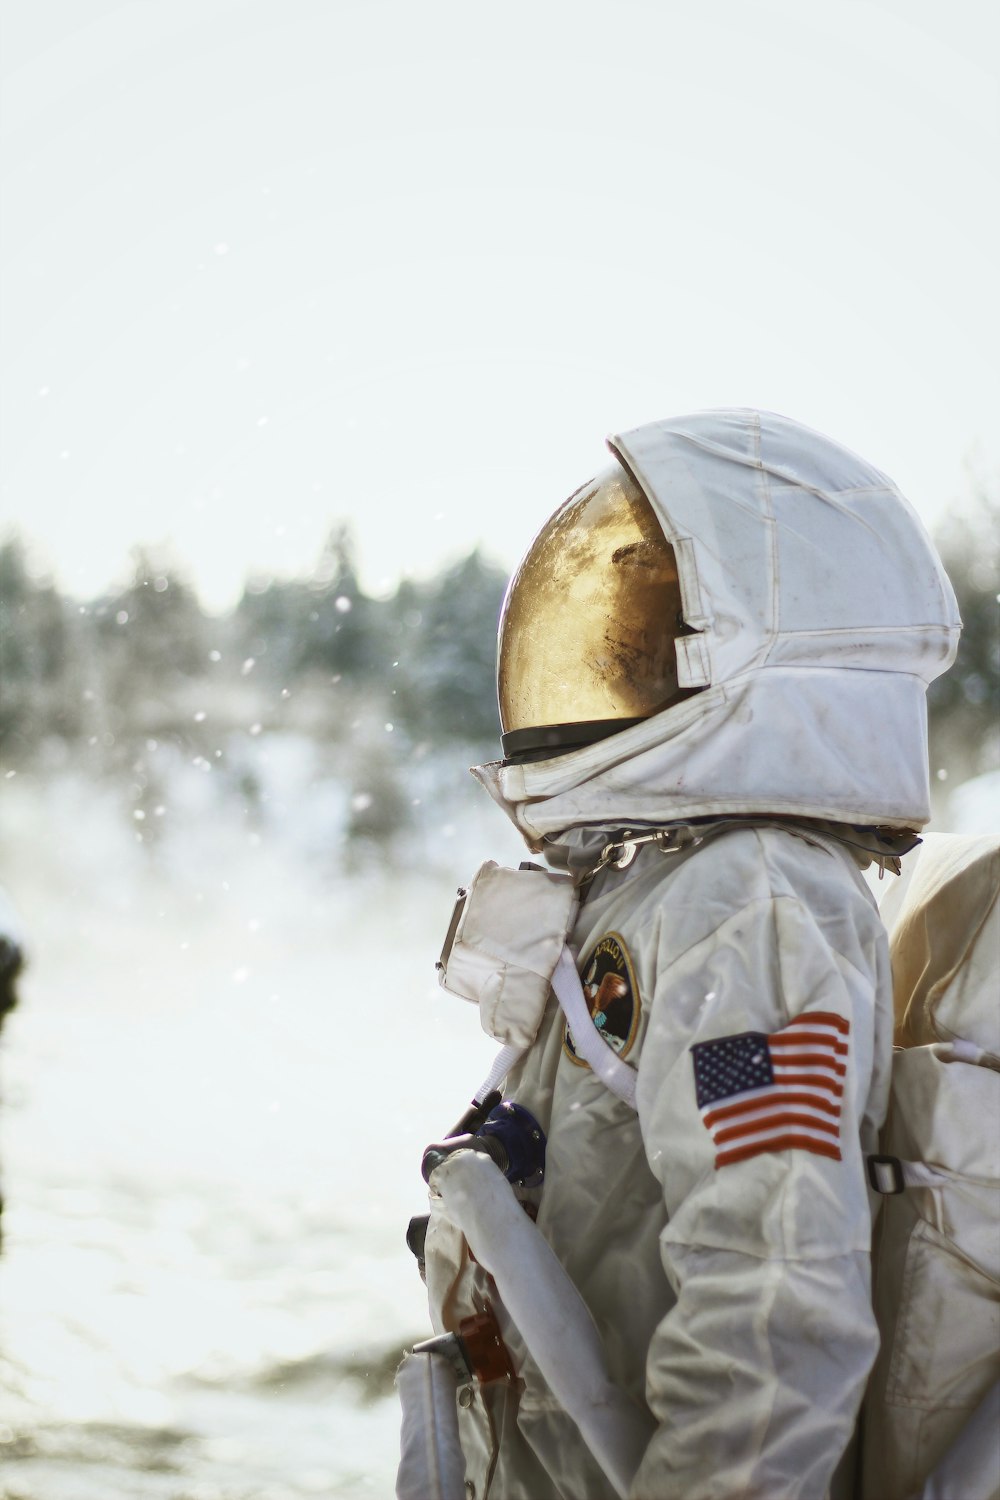 Más de 100 imágenes de astronautas | Descargar imágenes gratis en Unsplash